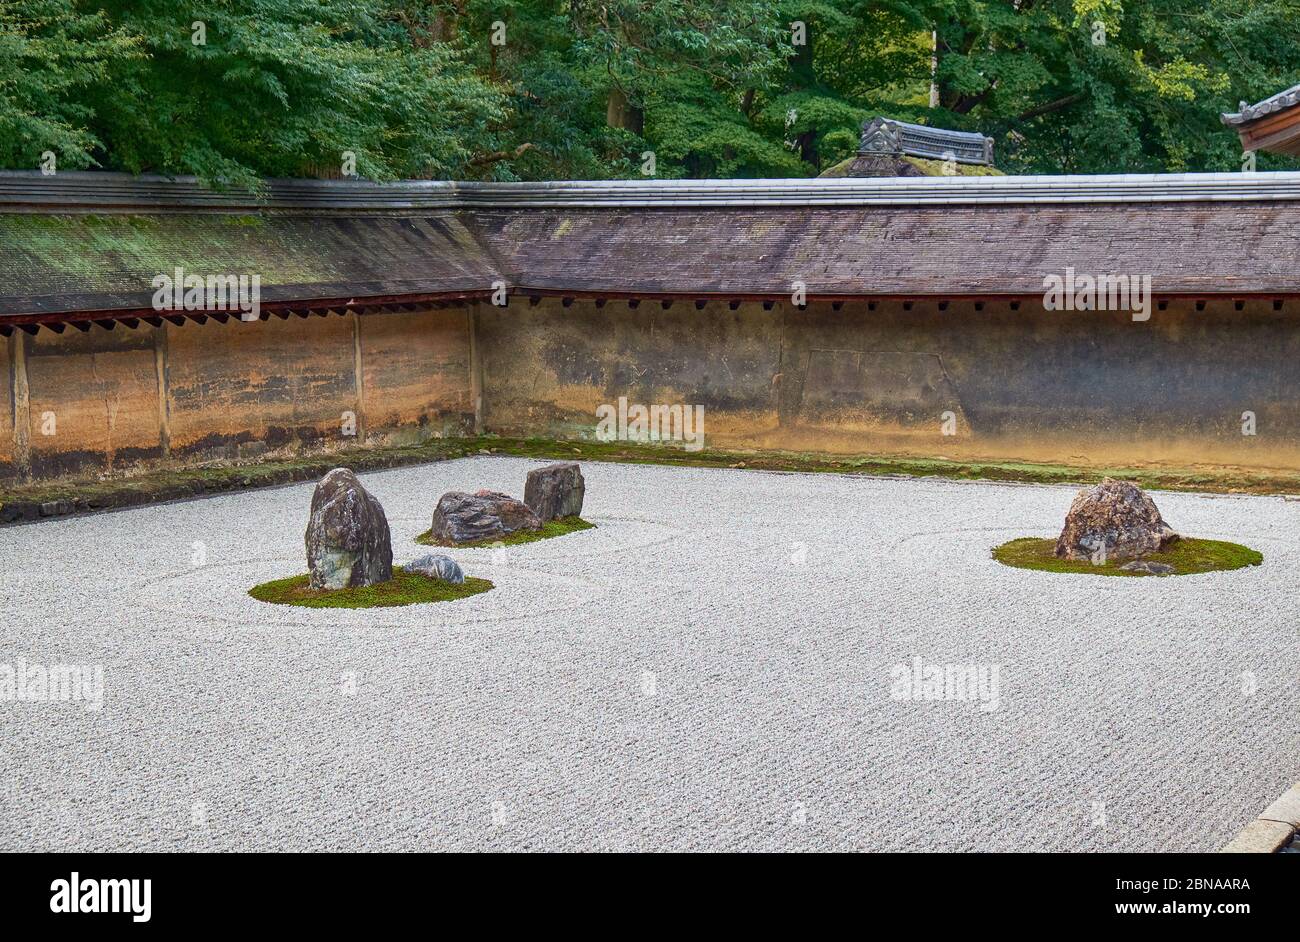 La vista di gruppi separati di massi circondati dalle onde di ghiaia bianca nel famoso giardino di pietra Zen del tempio Ryoan-ji. Kyoto. Giappone Foto Stock